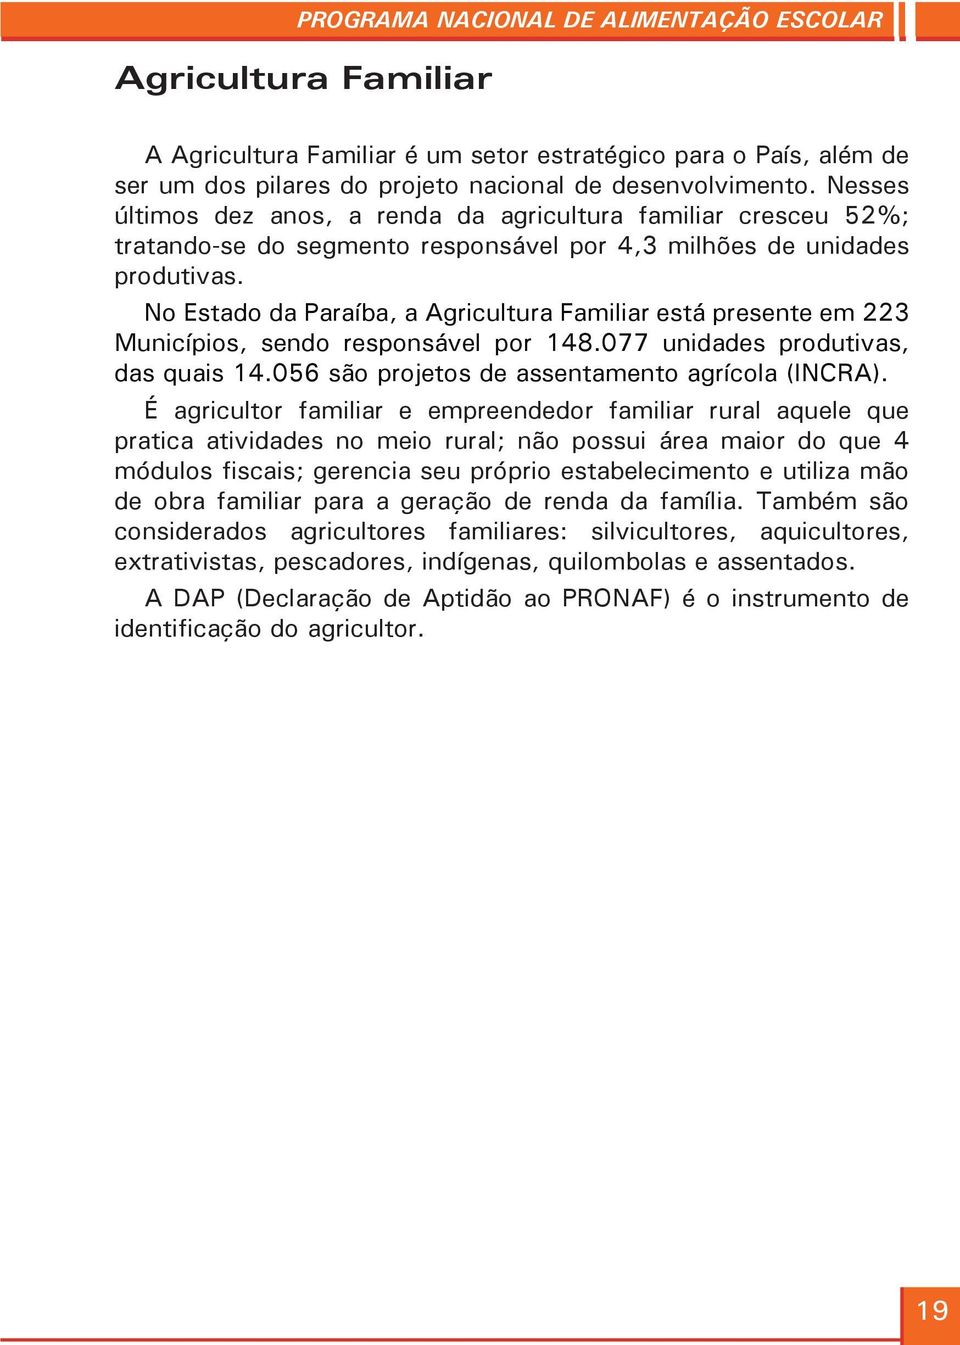 No Estado da Paraíba, a Agricultura Familiar está presente em 223 Municípios, sendo responsável por 148.077 unidades produtivas, das quais 14.056 são projetos de assentamento agrícola (INCRA).